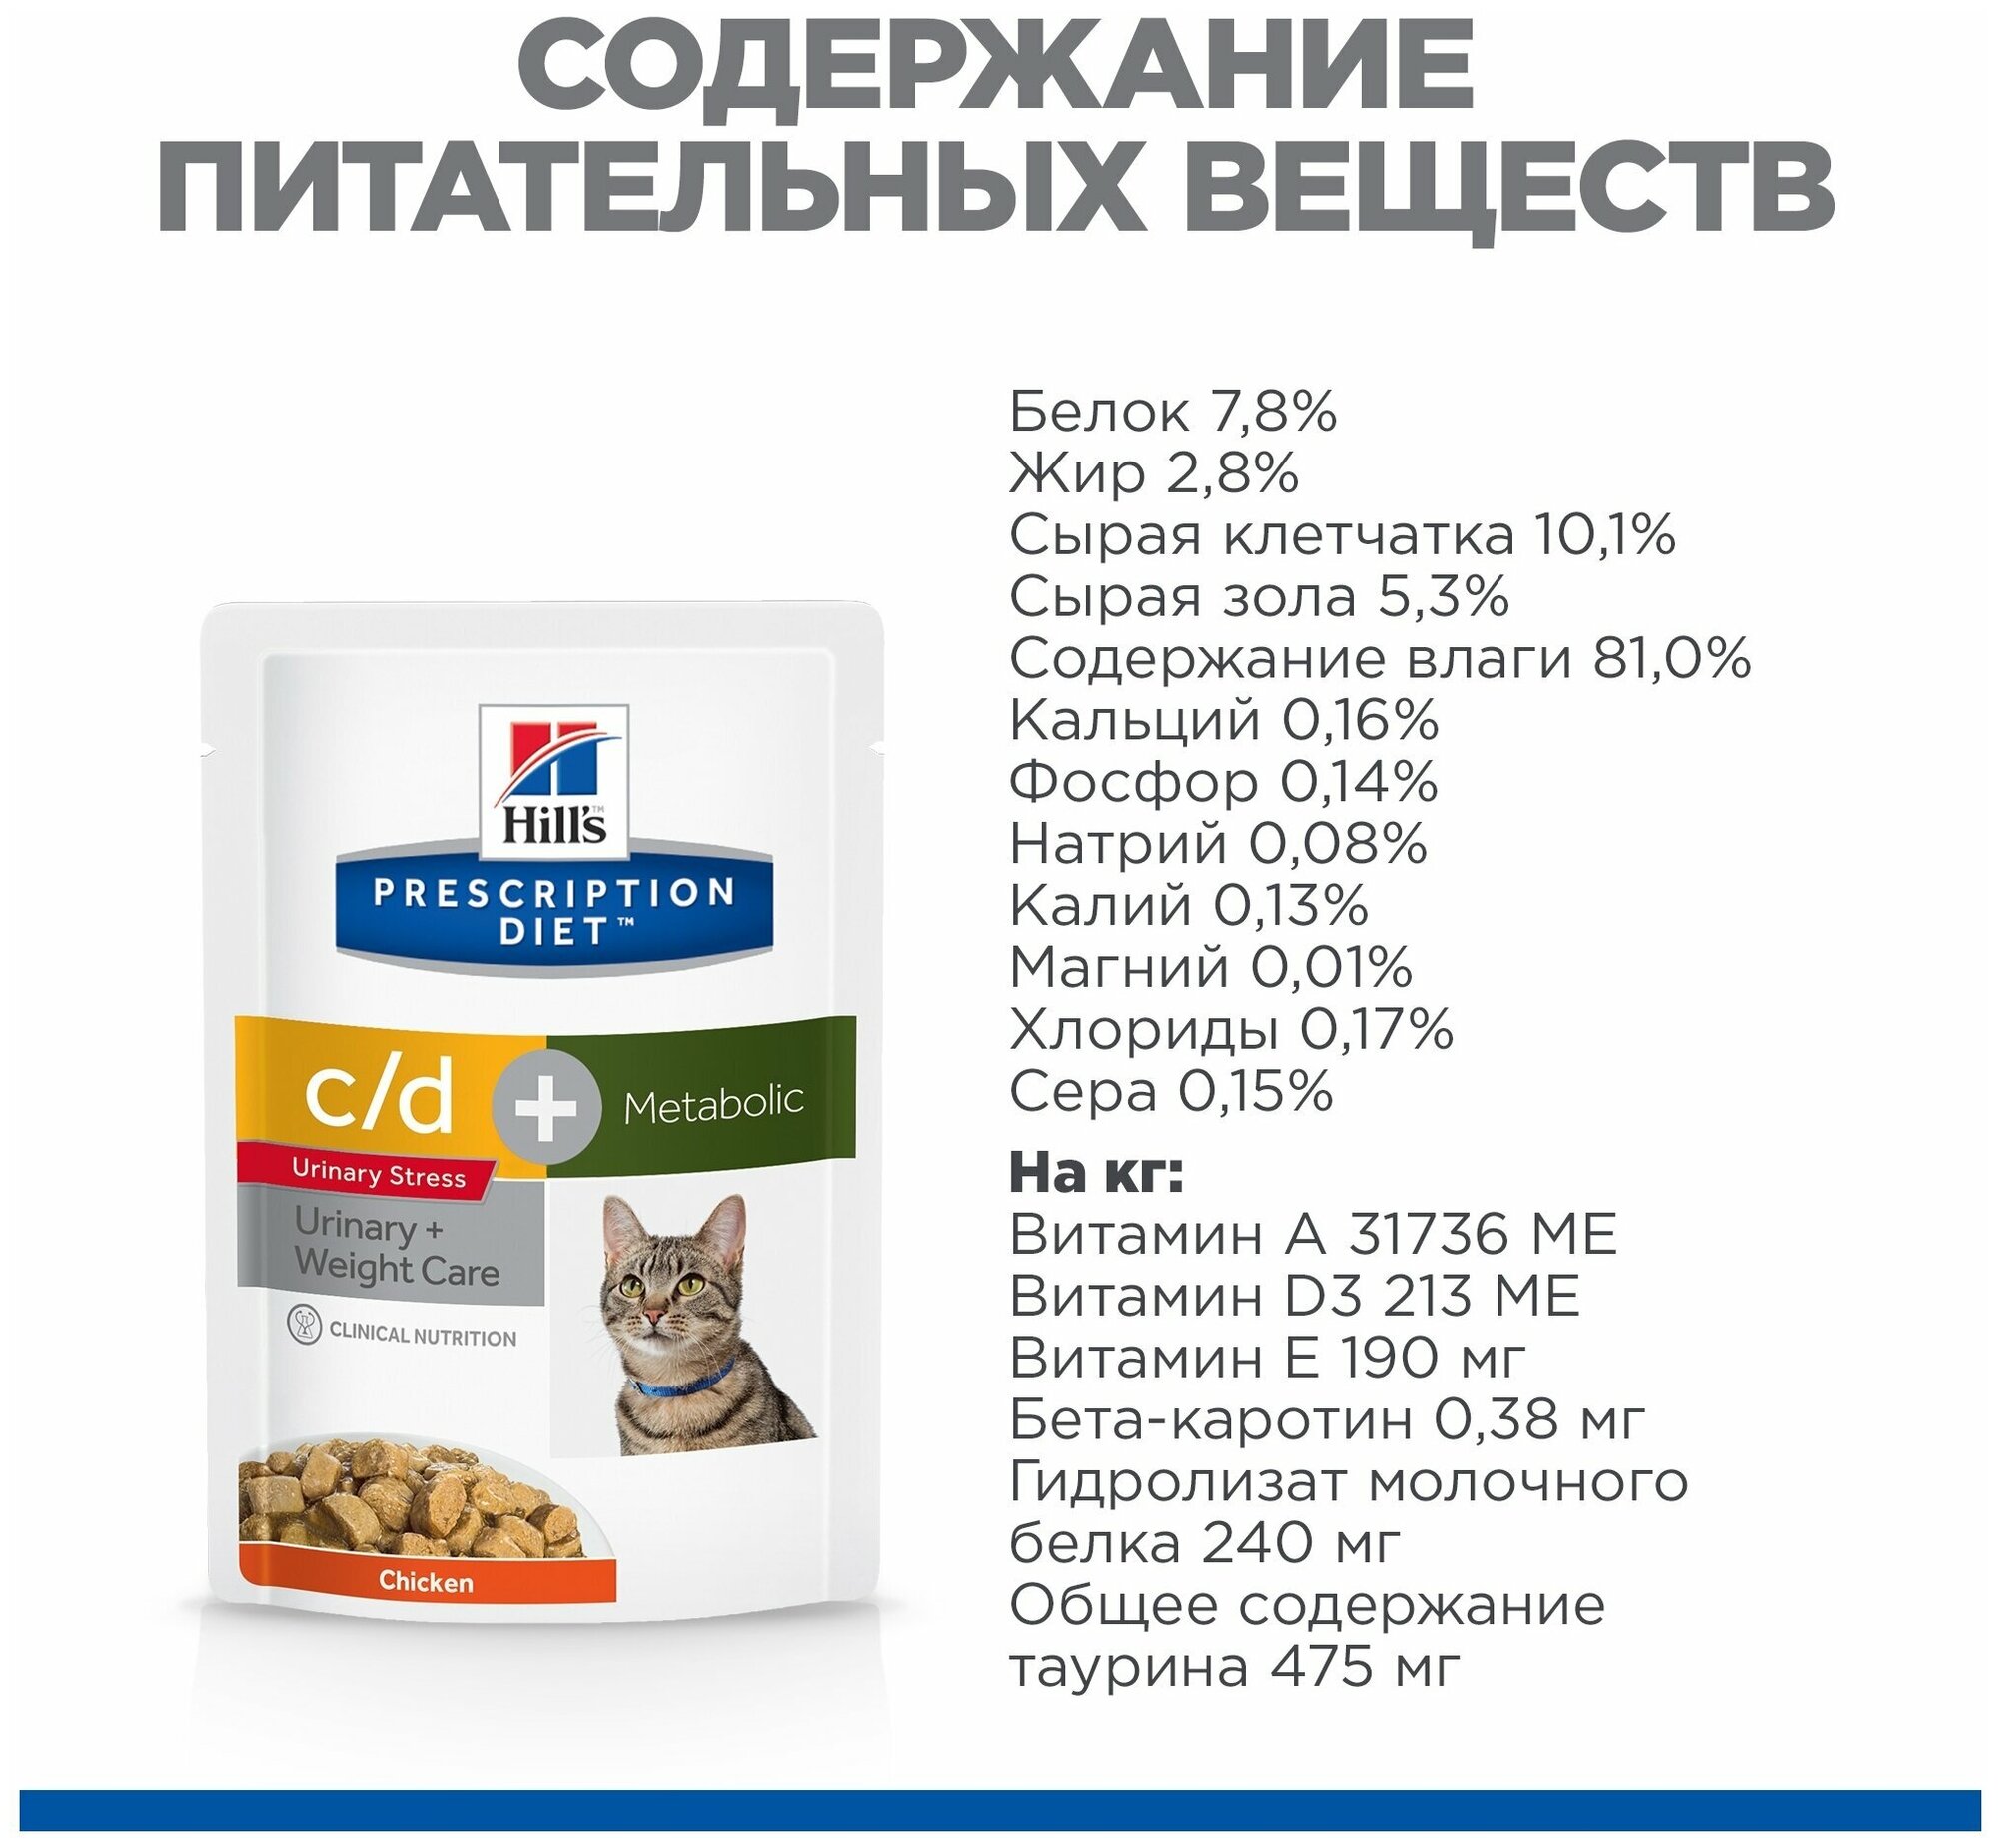 Hill's Prescription Diet Metabolic CD Urinary Stress Влажный корм для взрослых кошек в форме кусочков в соусе с курицей, 85 г - фото №7